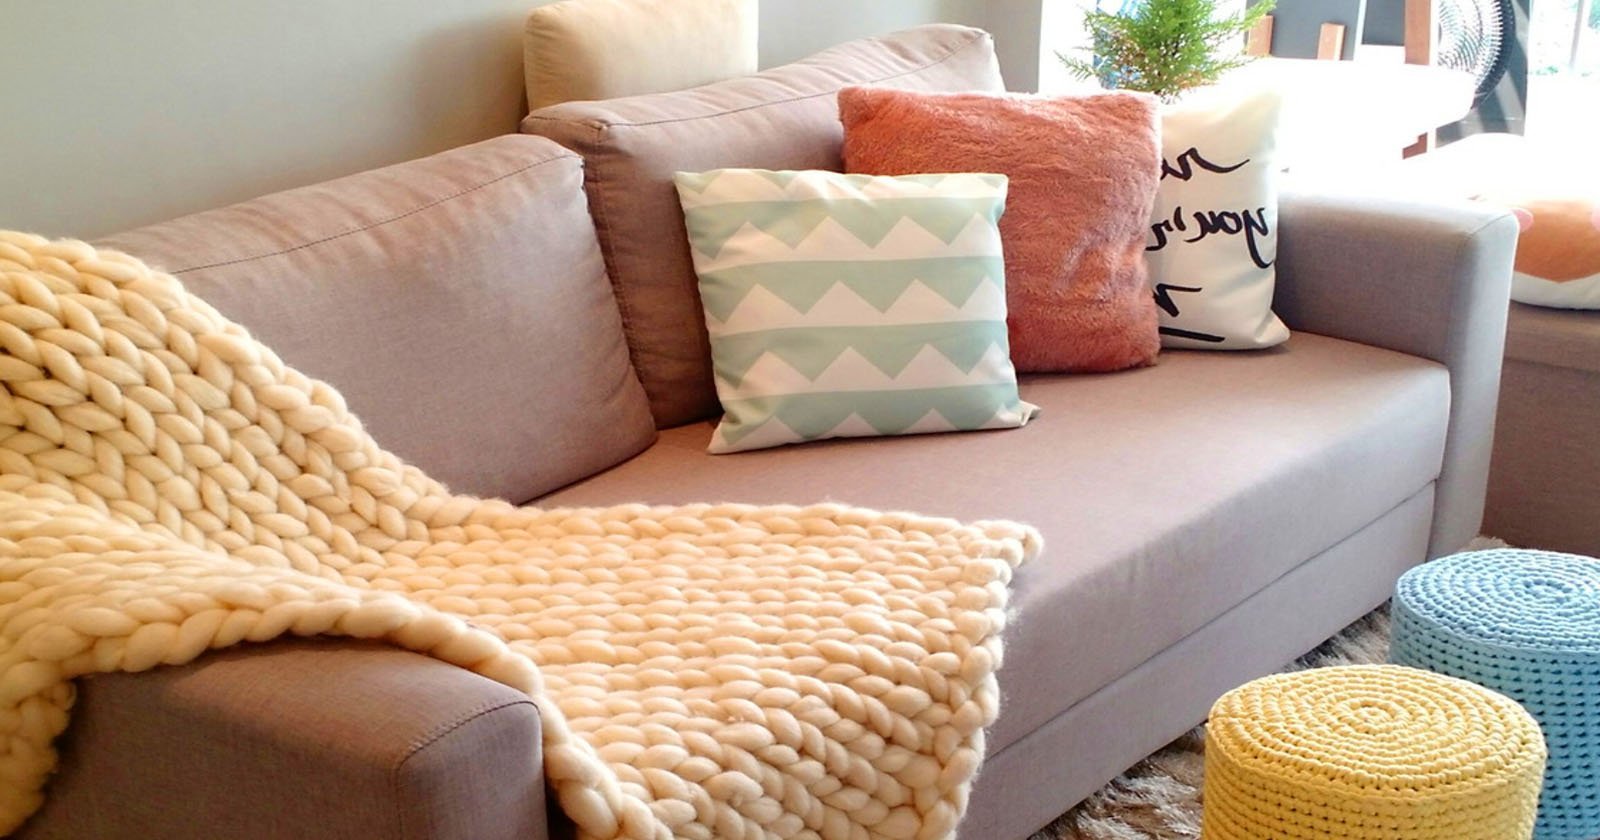 Transforme seu ambiente com estas 6 ideias criativas de decoração com almofadas